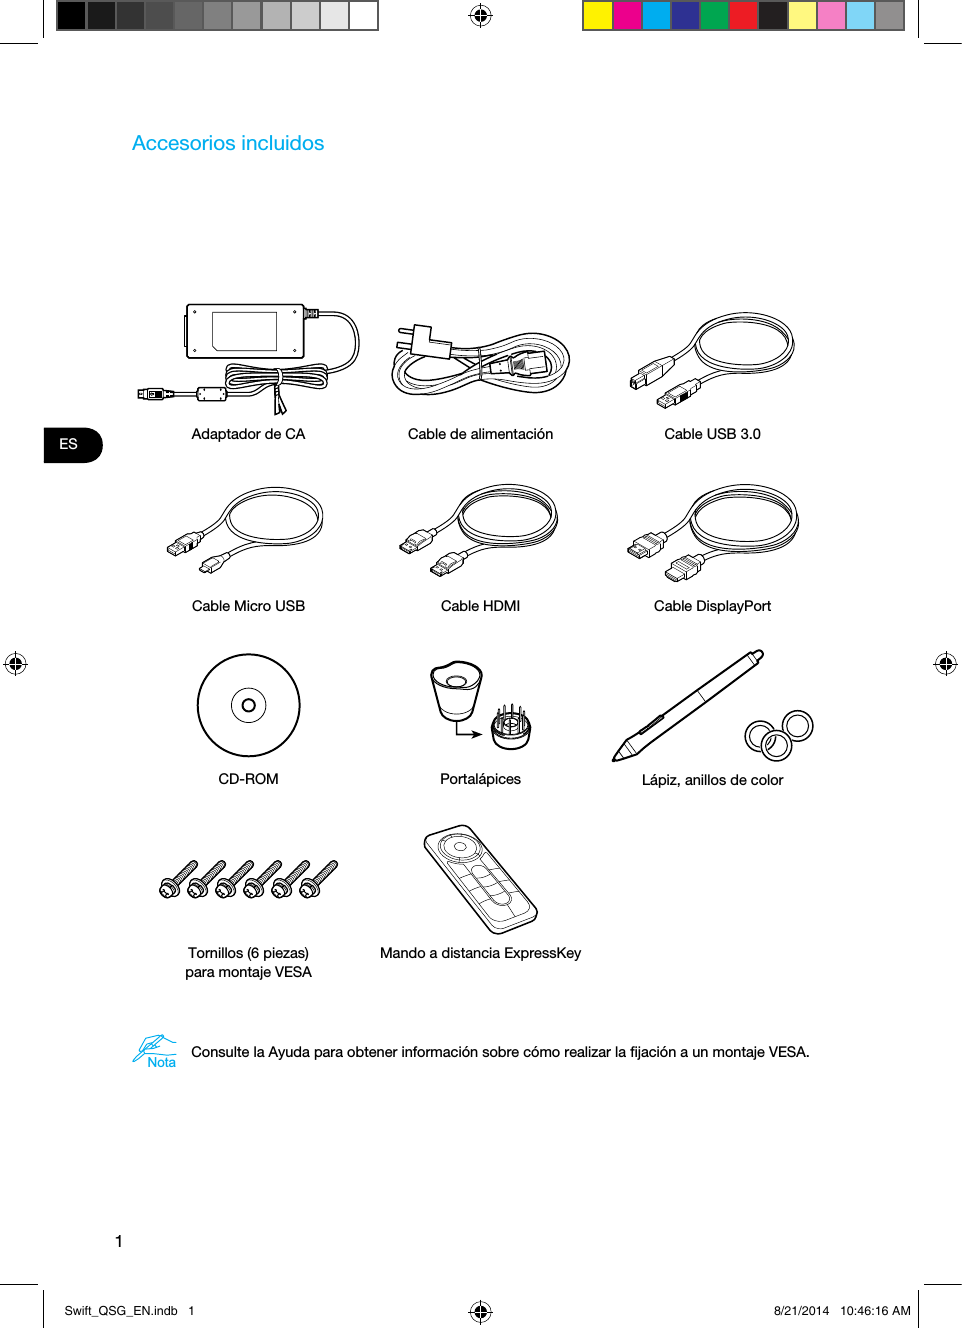 1ESAccesorios incluidosAdaptador de CA Cable de alimentación Cable USB 3.0Cable Micro USB Cable HDMI Cable DisplayPortCD-ROM Portalápices Lápiz, anillos de colorTornillos (6 piezas)  para montaje VESAMando a distancia ExpressKeyNotaConsulte la Ayuda para obtener información sobre cómo realizar la ﬁjación a un montaje VESA. Swift_QSG_EN.indb   1 8/21/2014   10:46:16 AM